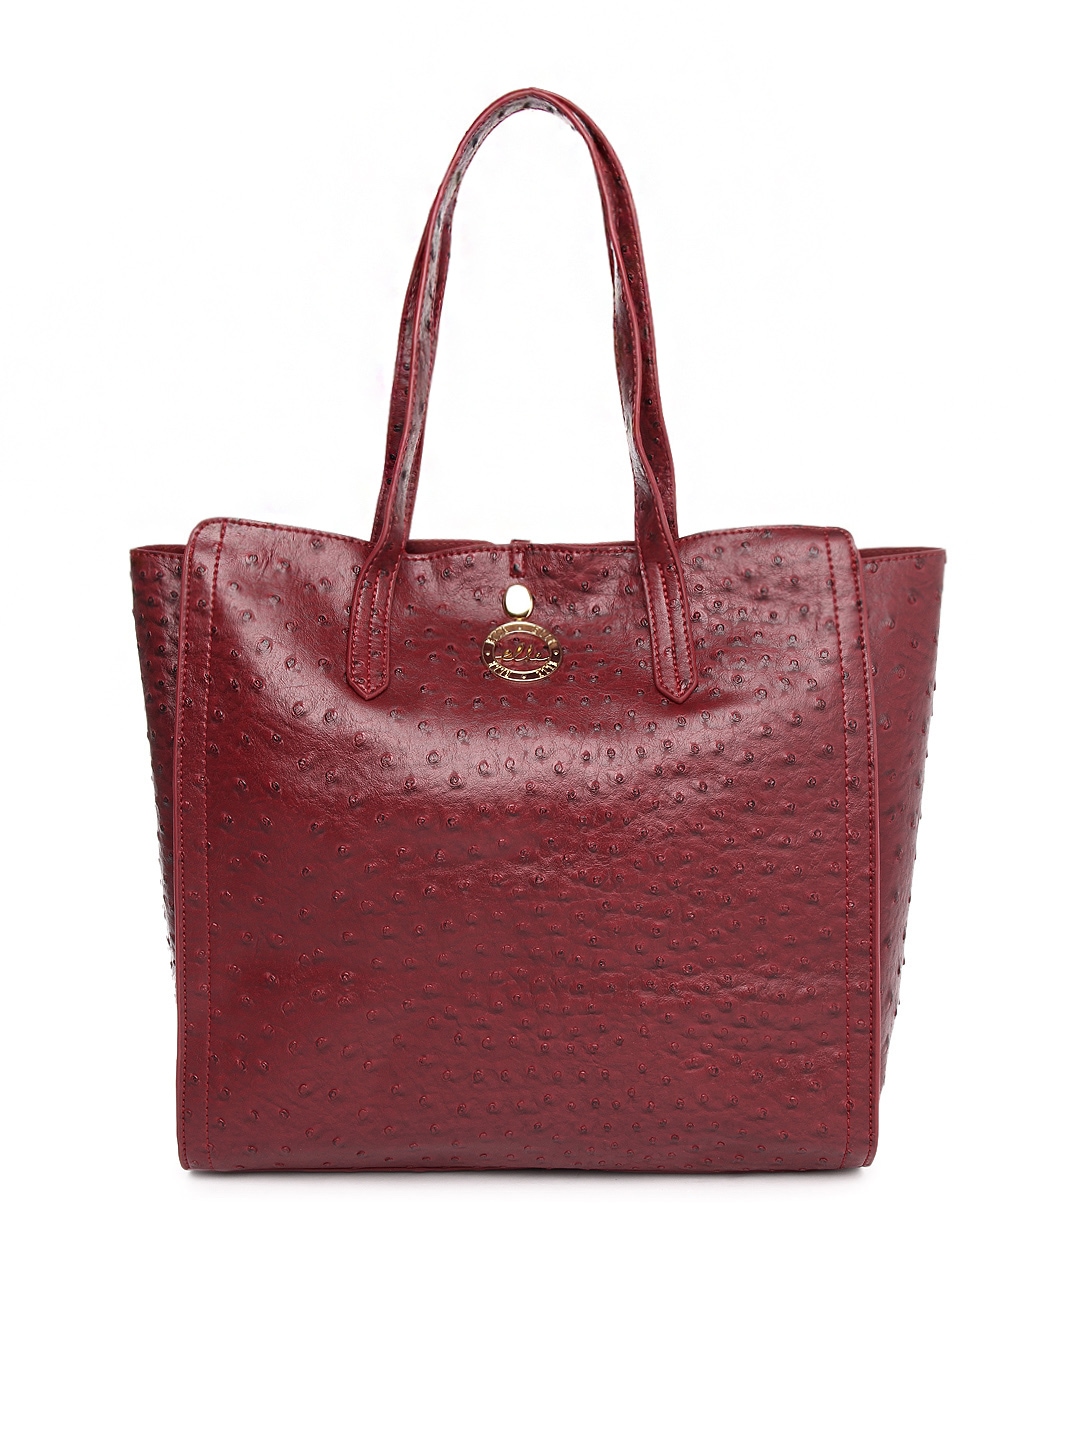 Myntra Elle Women Red Tote Bag 628176 | Buy Myntra Elle Tote Bags at ...